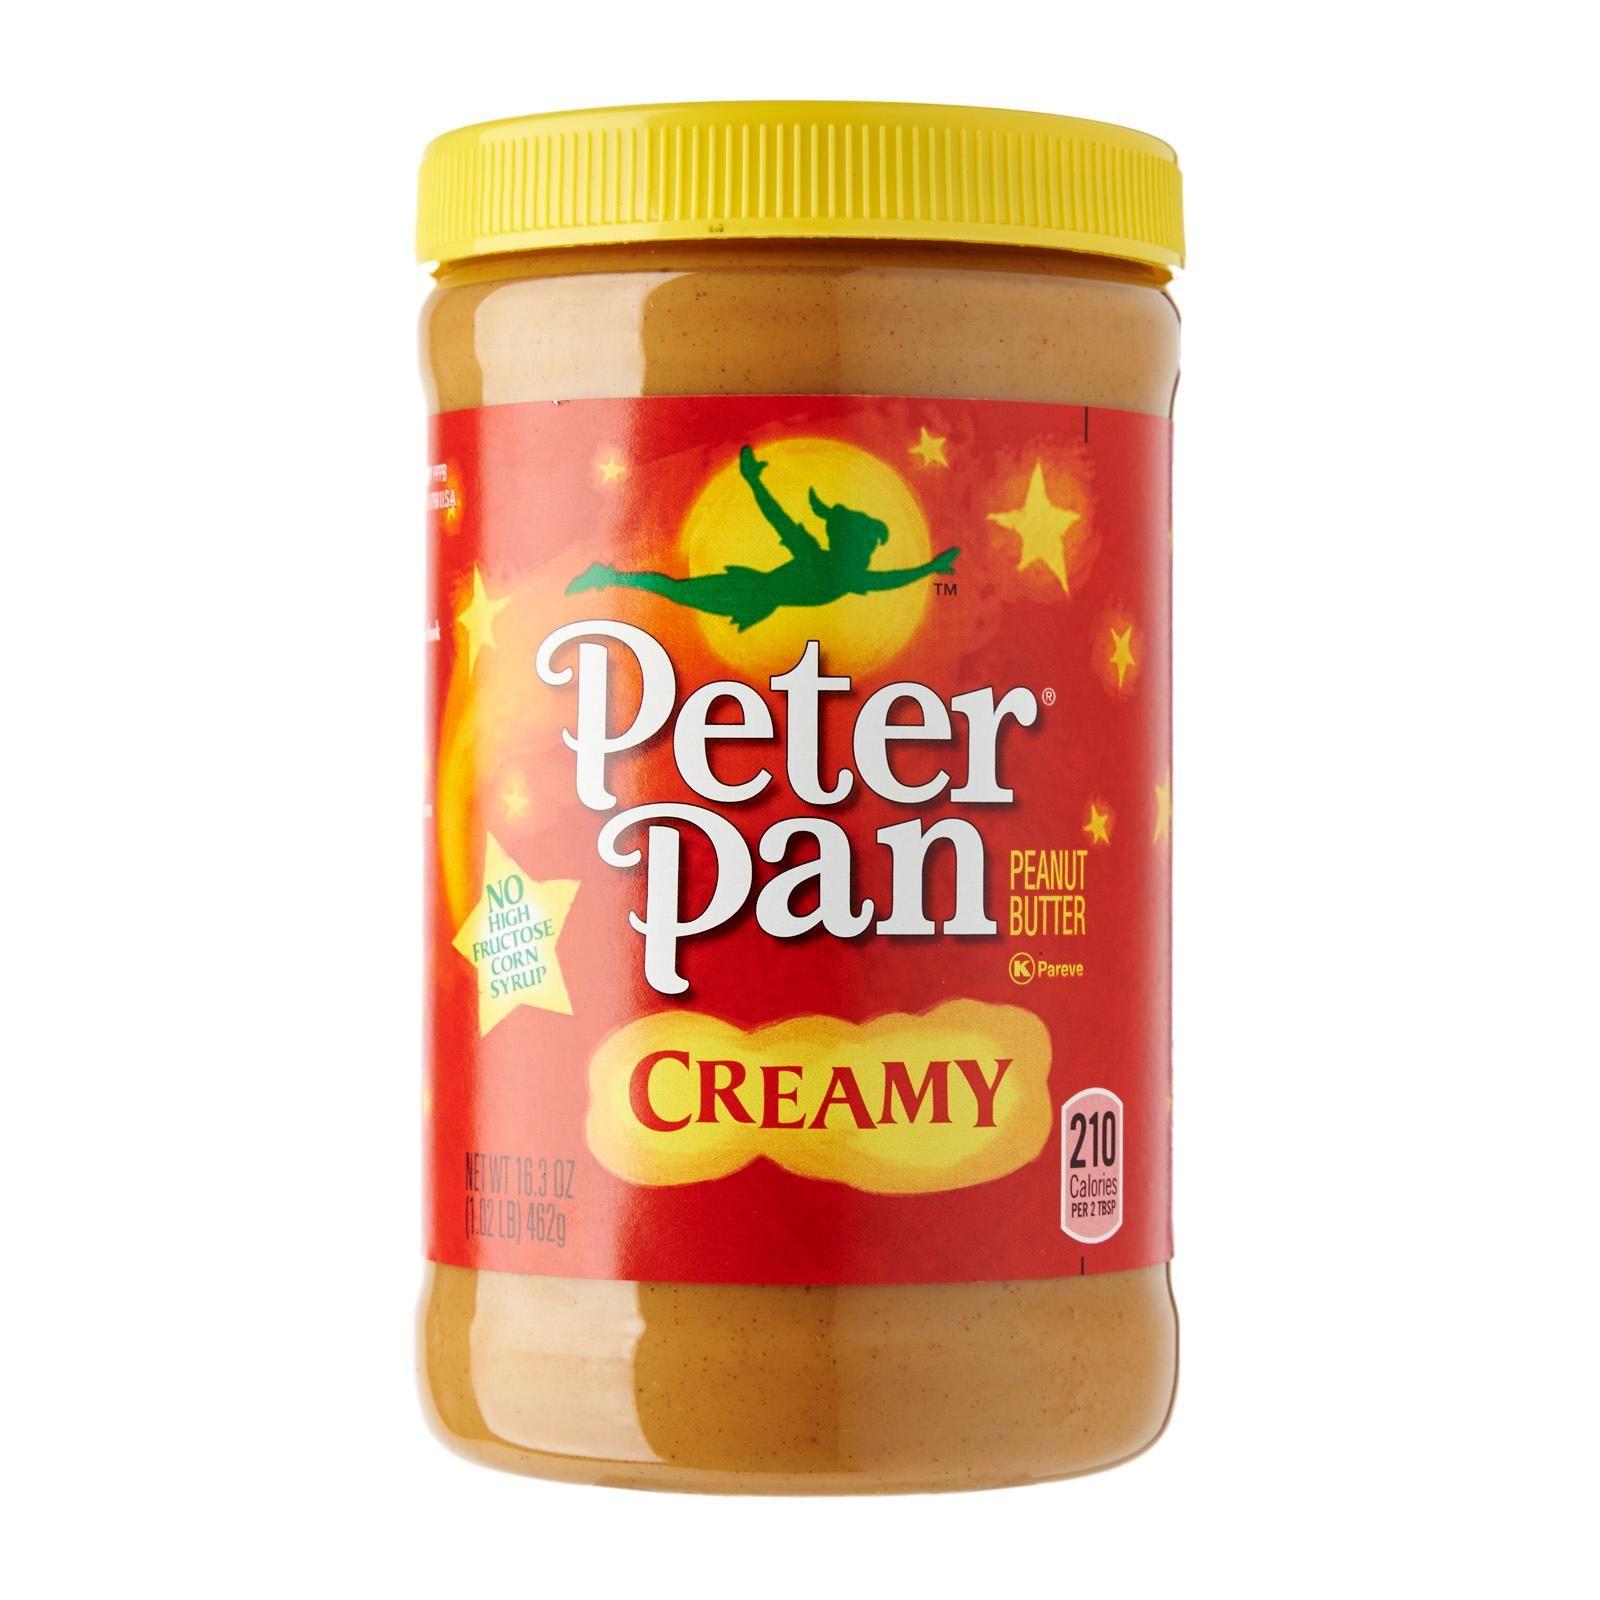 Peter Pan Peanut Butter Logo - Peter Pan Creamy Peanut Butter 462g - from RedMart